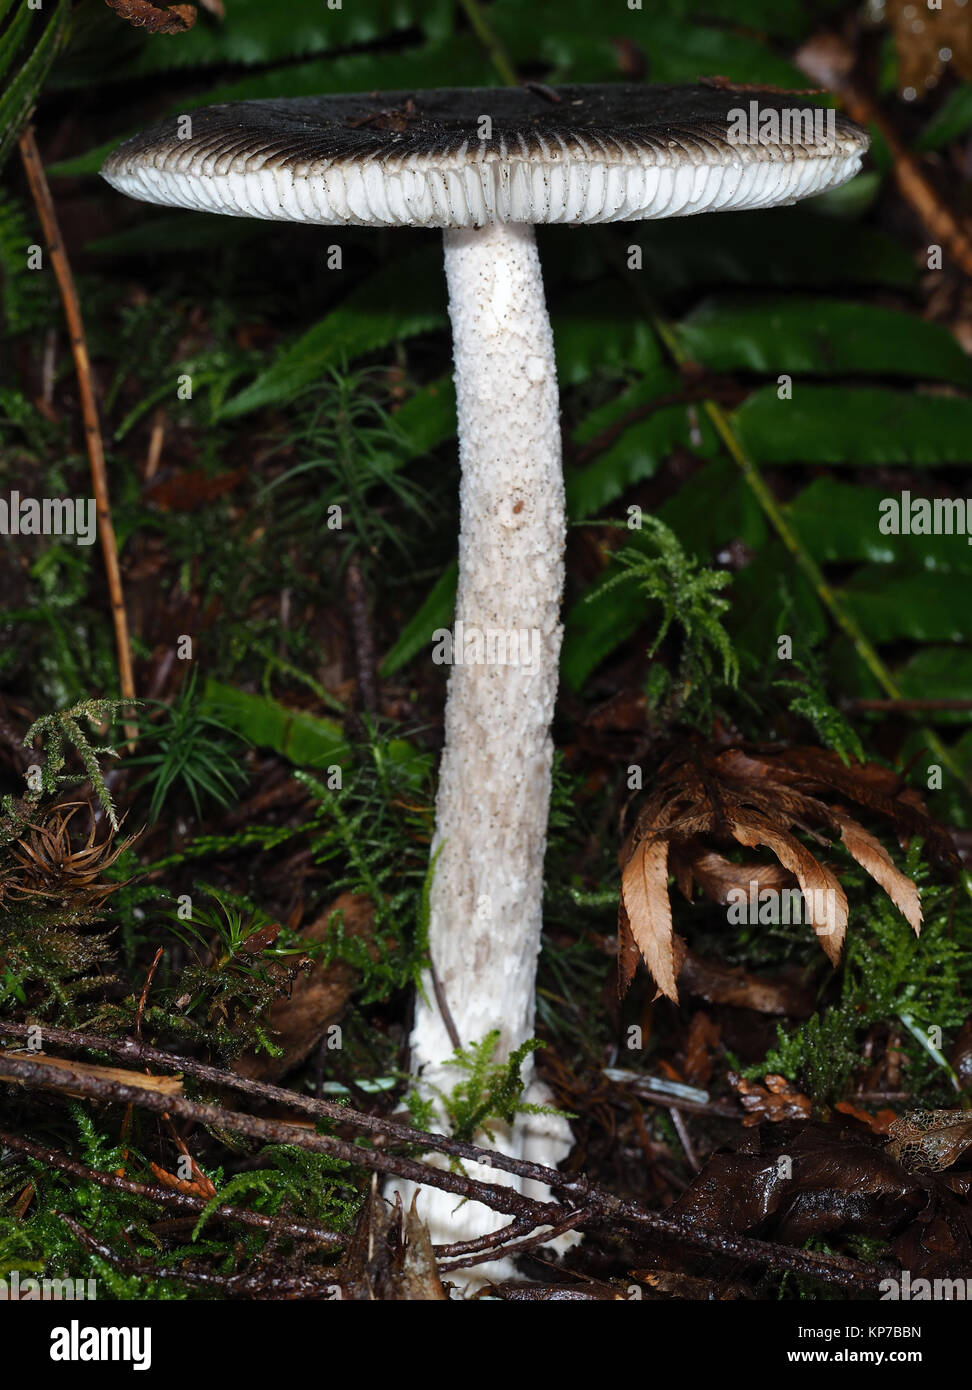 Amanita pachycolea, allgemein bekannt als die westlichen Grisette, im Pazifischen Nordwesten Wald wachsen; Seitenansicht Stockfoto